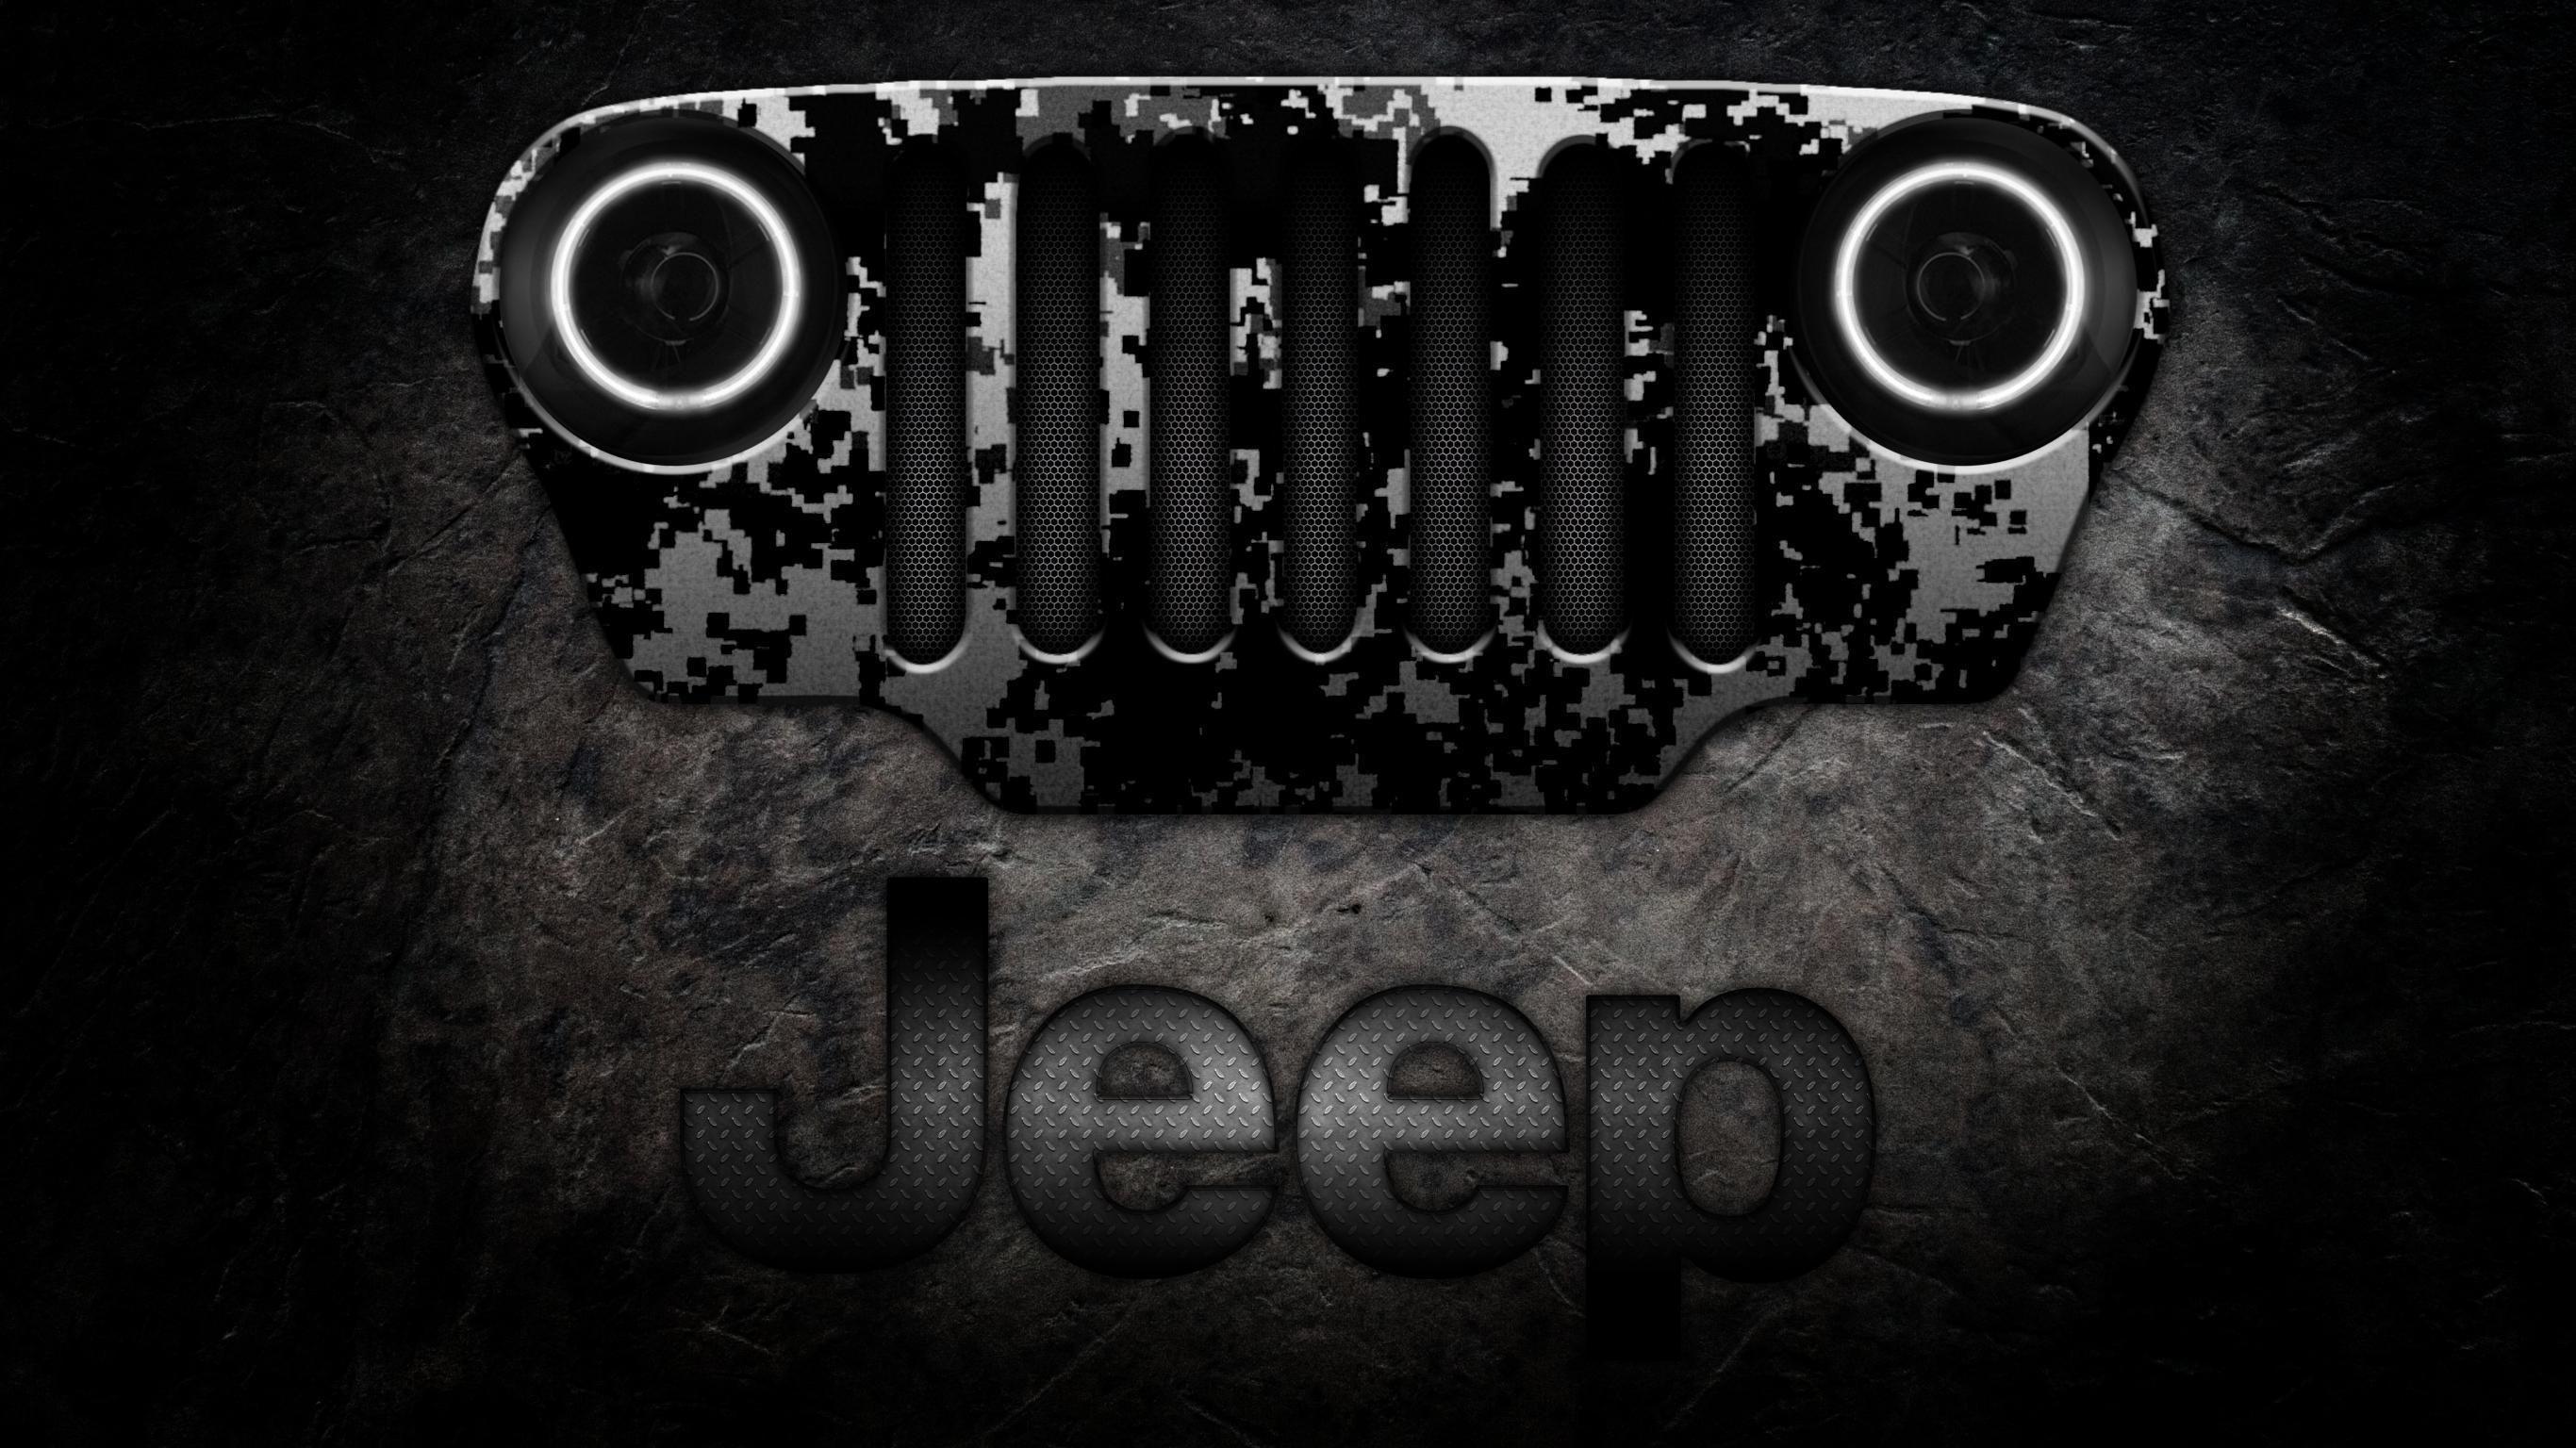 Awesome Jeep Logo - Awesome Jeep Logo Wallpaper. Jeep. Jeep, Jeep wrangler